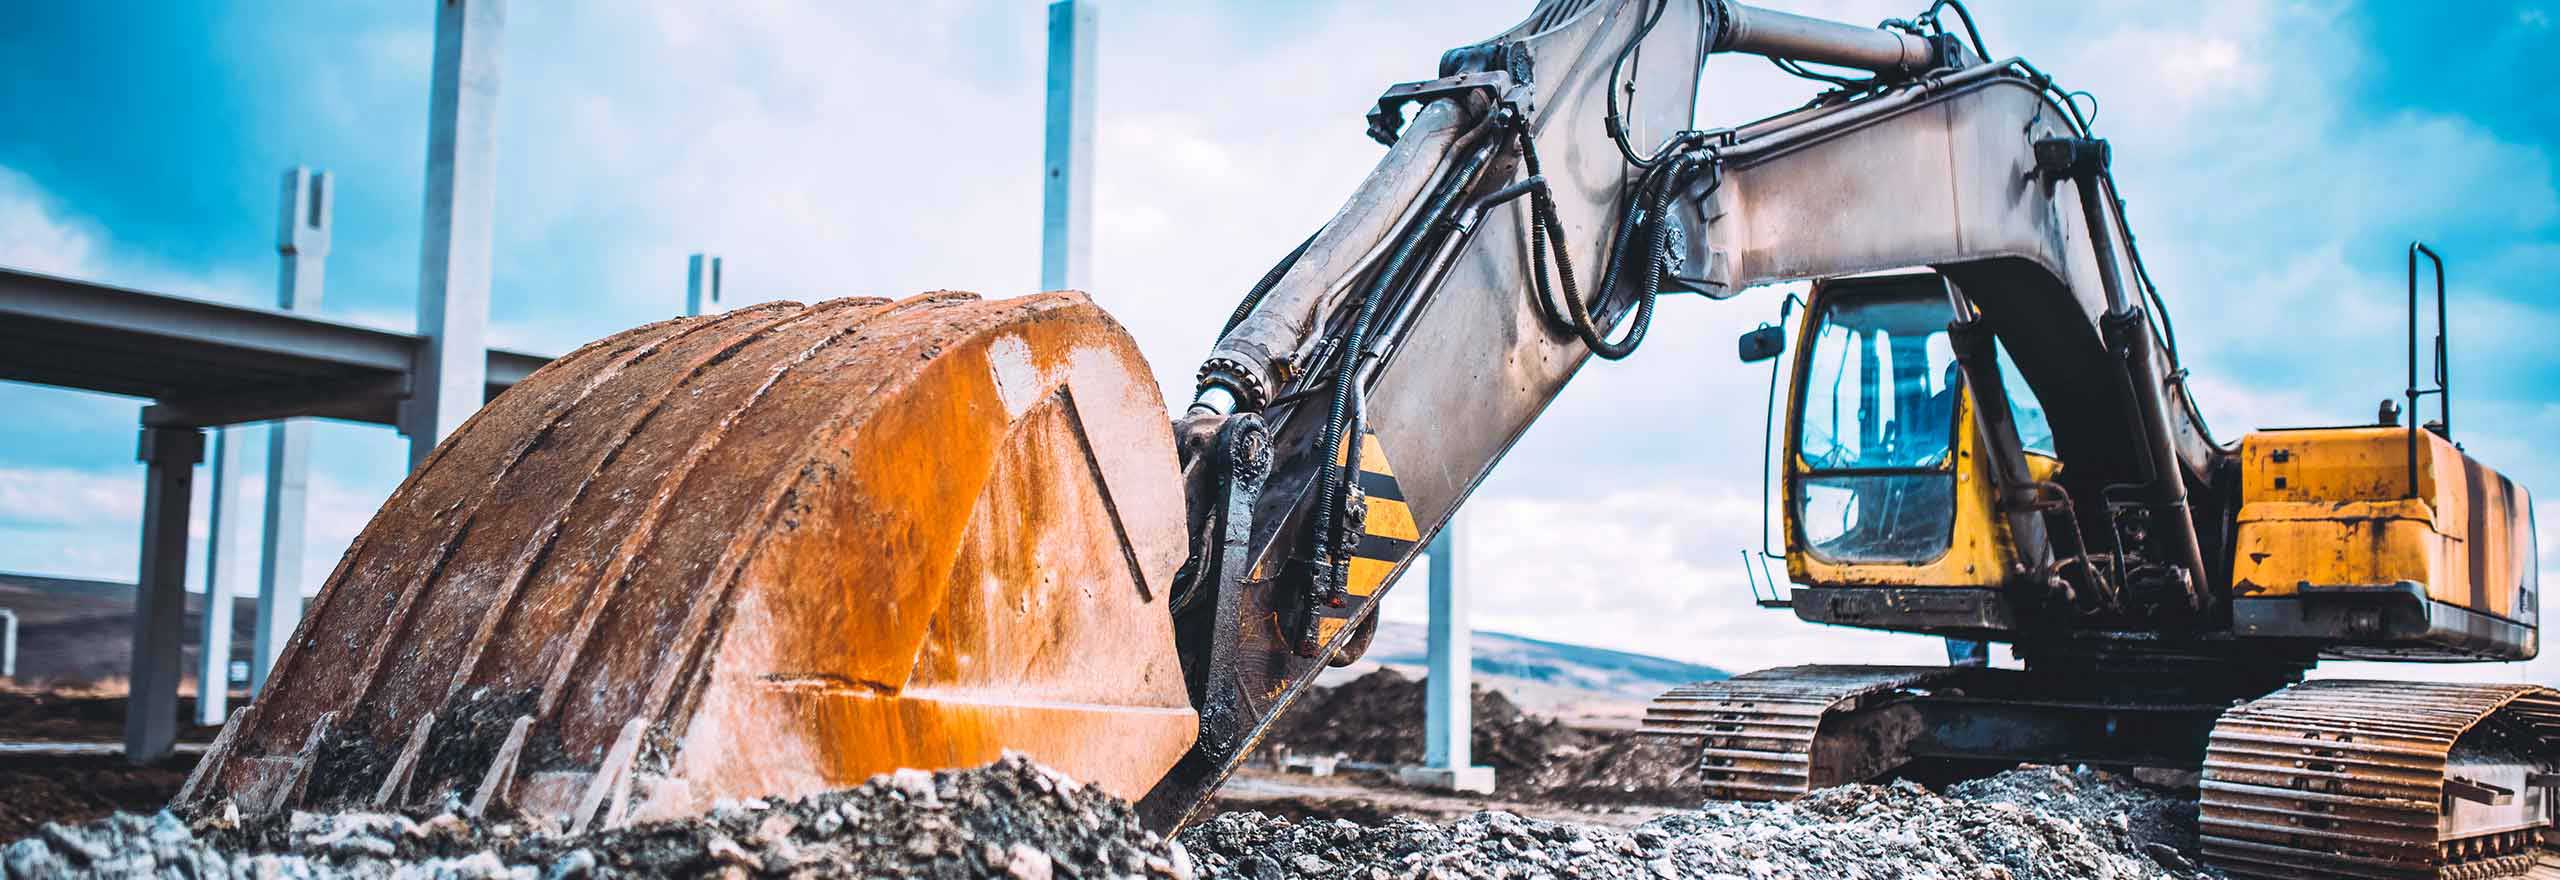 Preparación del terreno con excavadoras para nueva construcción de asfalto